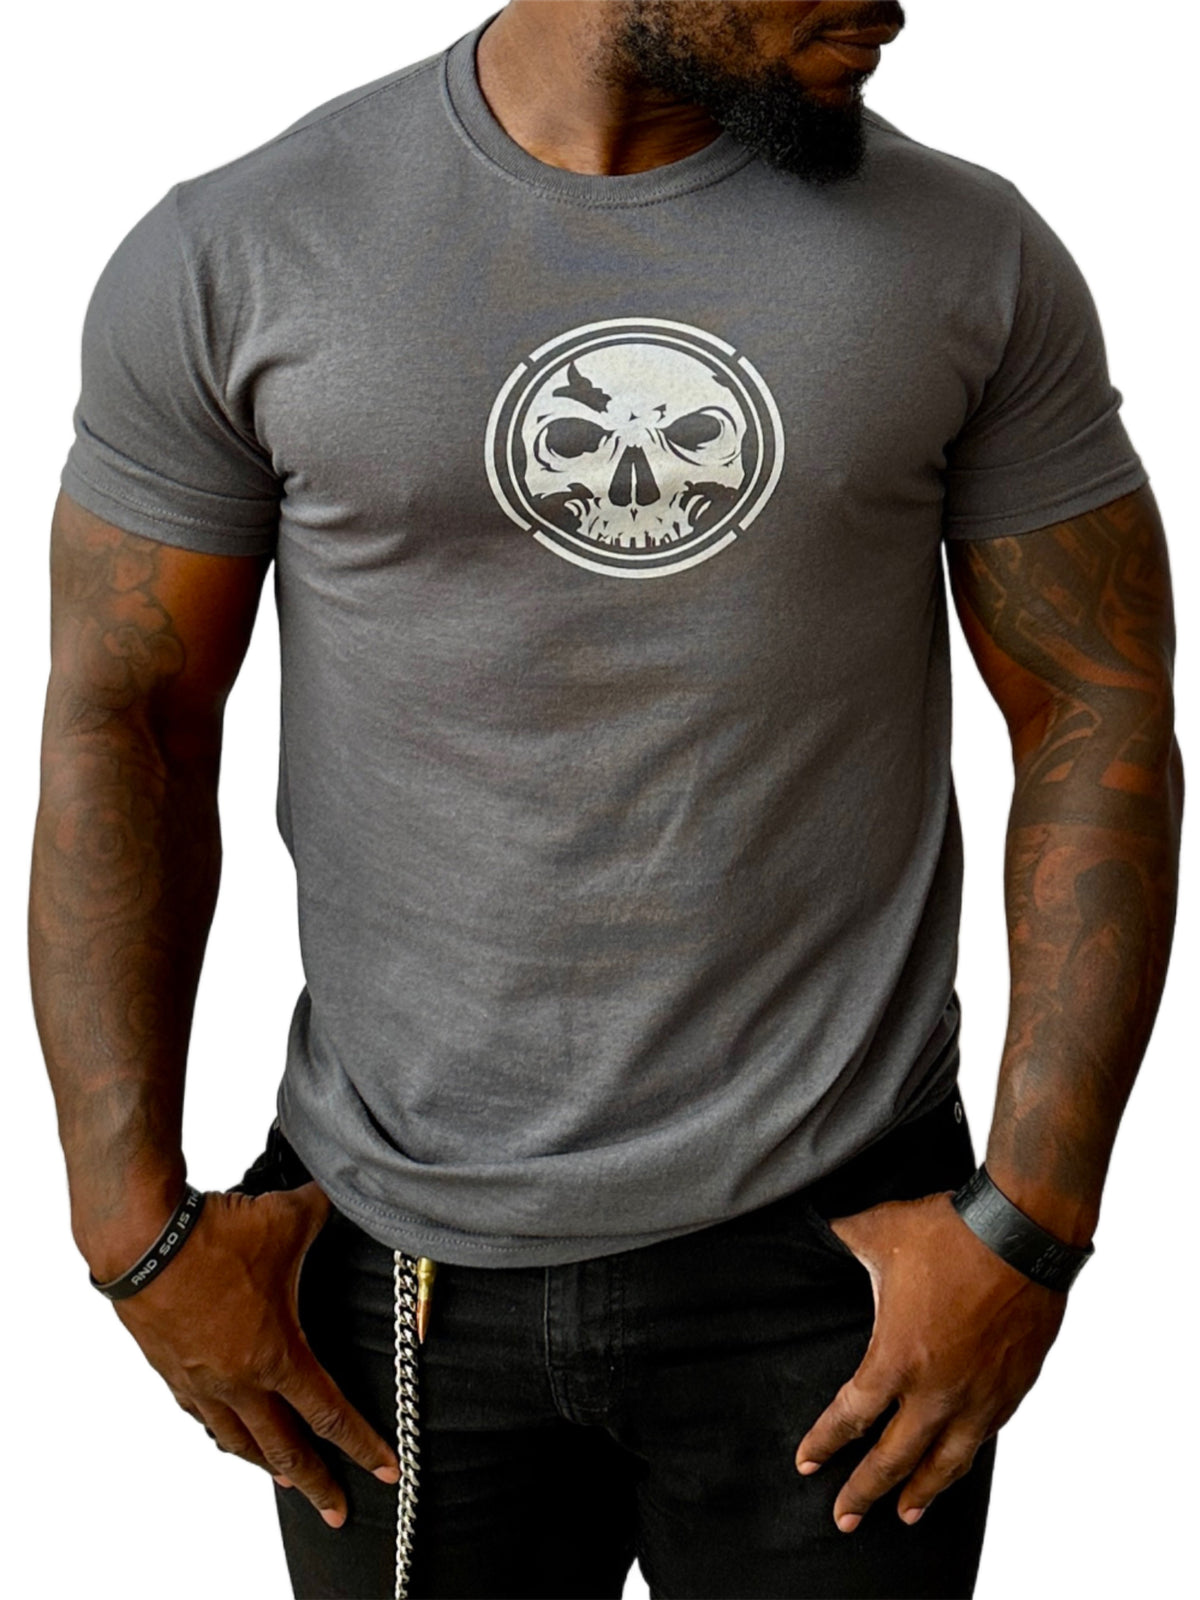 Men's Gray Moisture Management T-Shirt 2.0